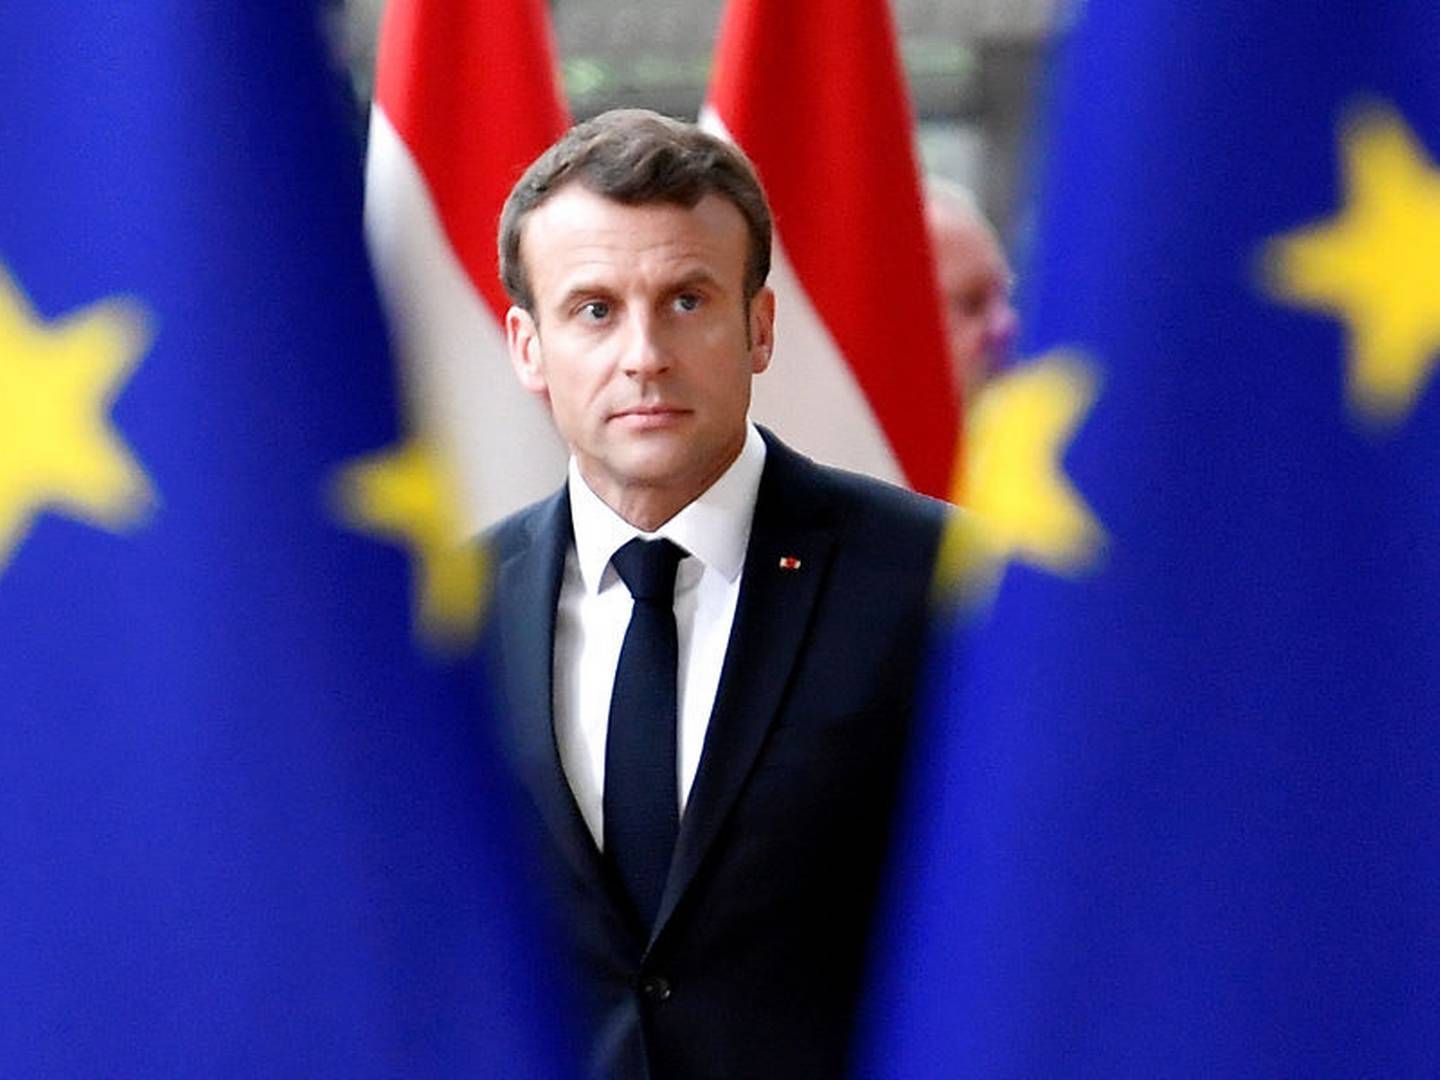 Emmanuel Macron nævner Margrethe Vestager som et bud på en kommende formand for EU-kommissionen. | Foto: Ritzau Scanpix/Reuters/Piroschka Van De Wouw